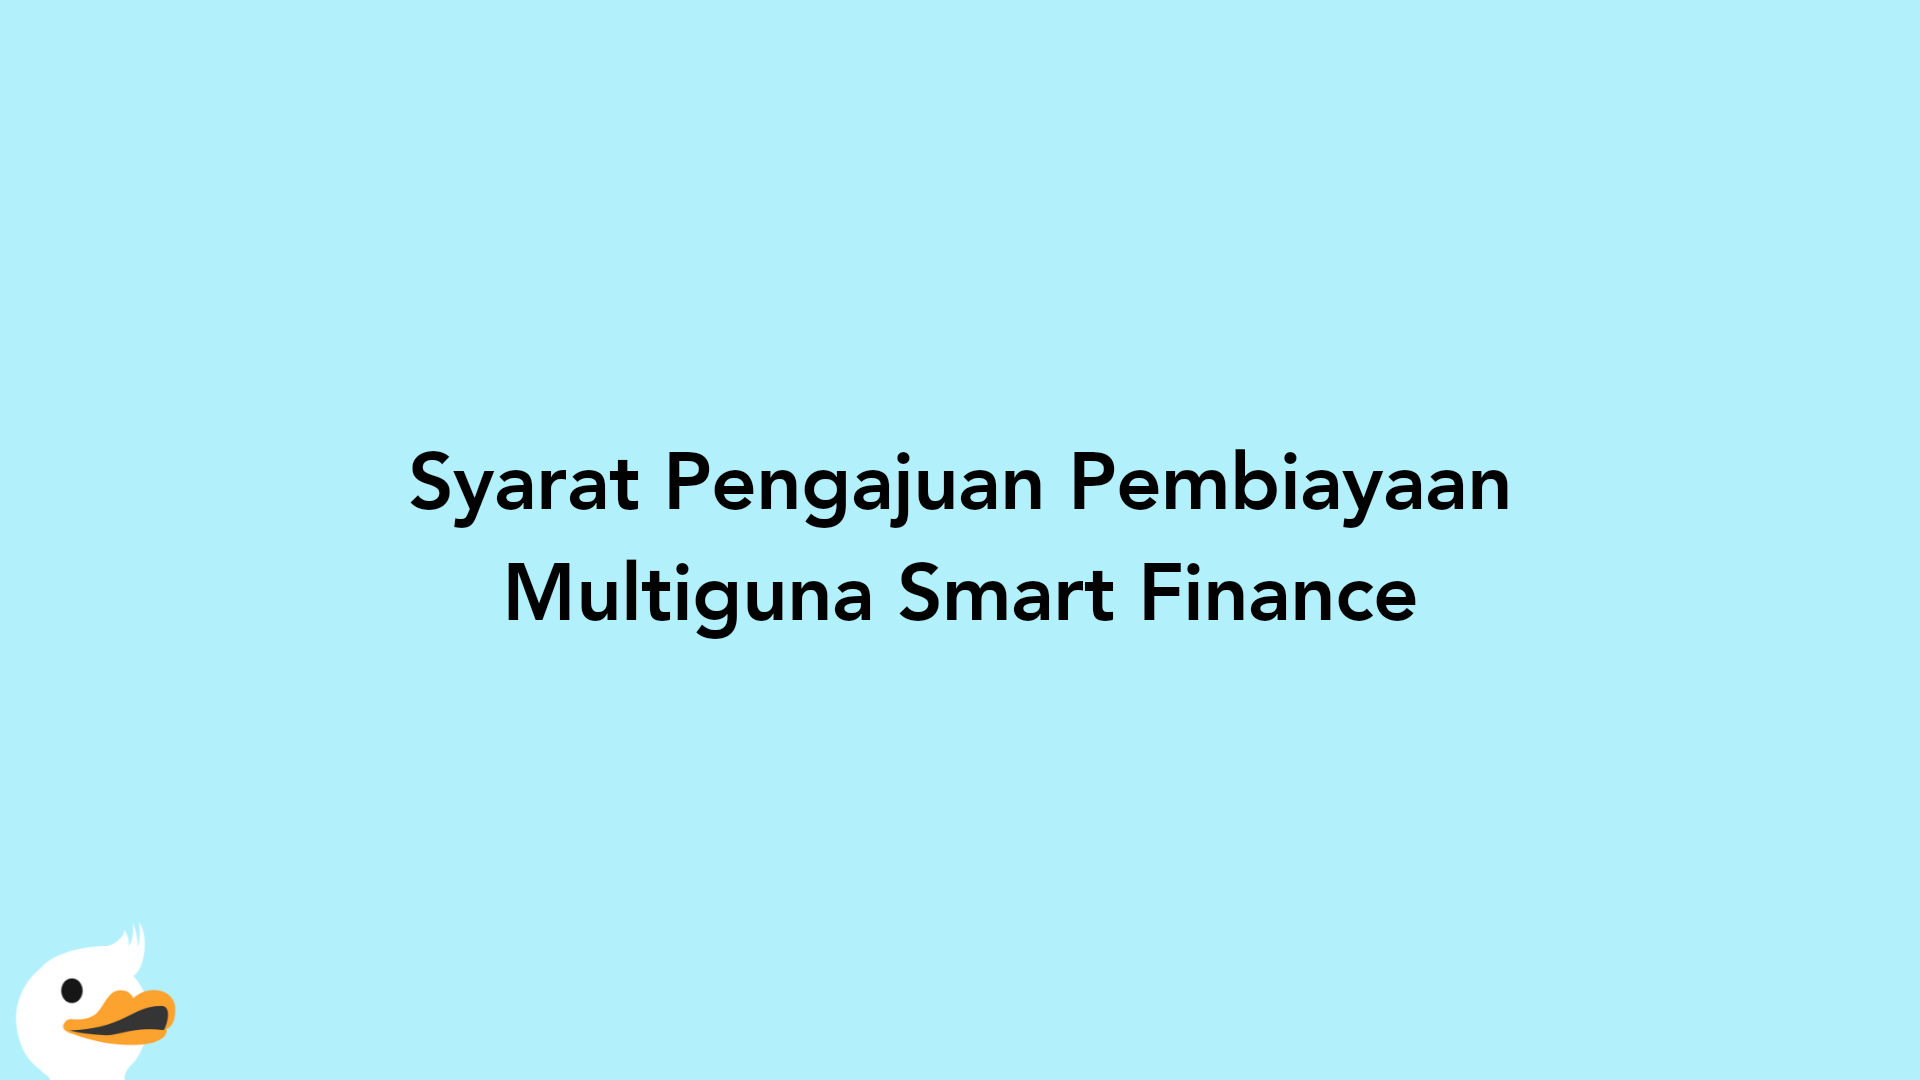 Syarat Pengajuan Pembiayaan Multiguna Smart Finance